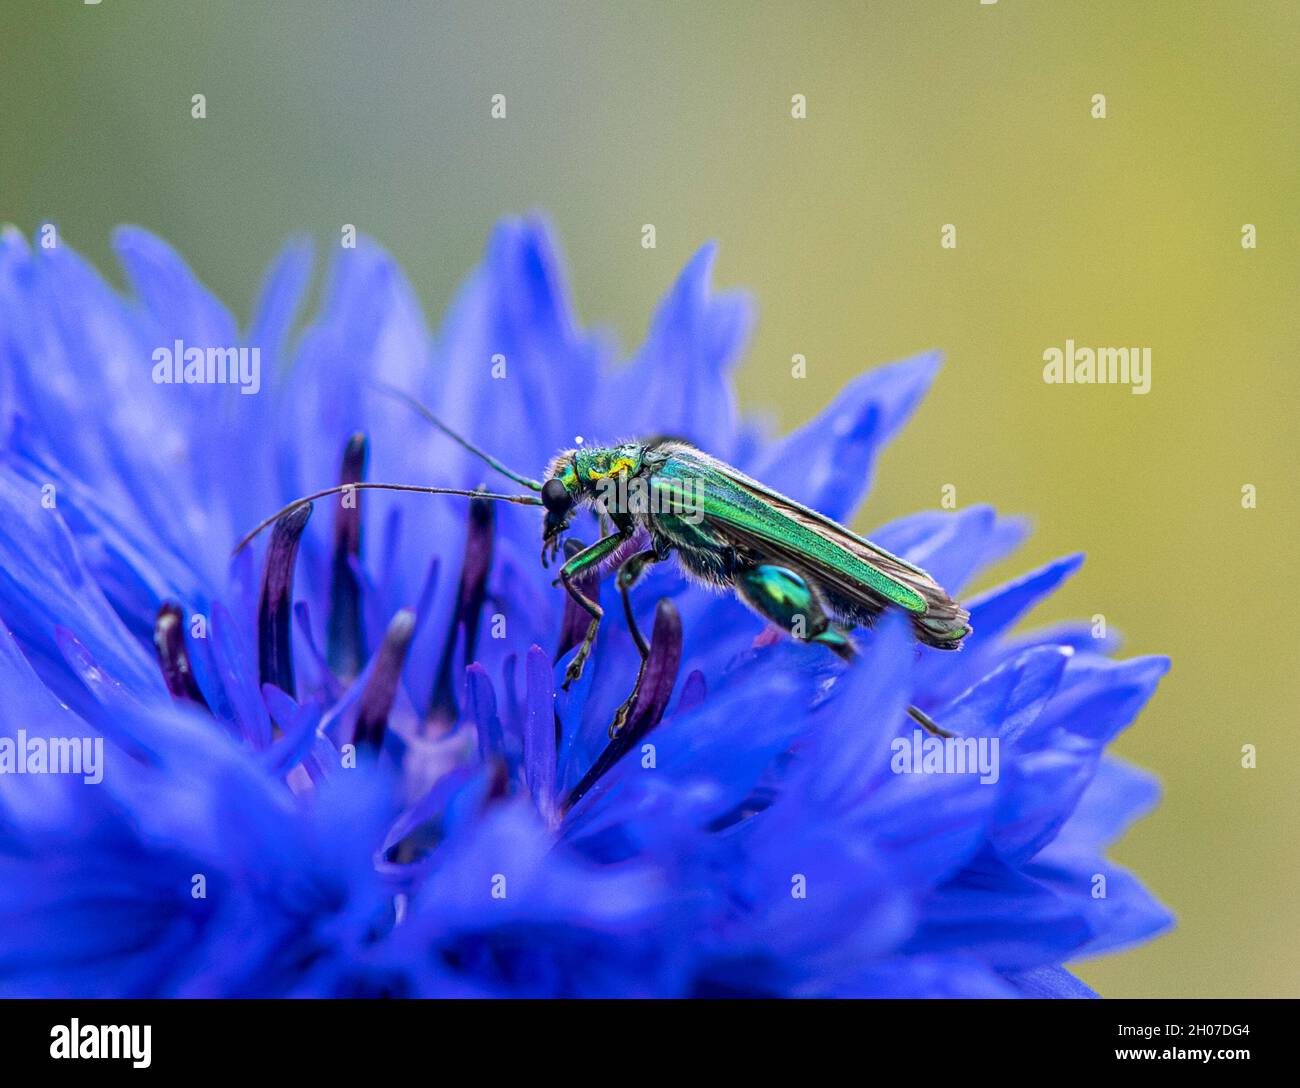 vert métallisé joyau brillant coléoptère sur bleuet - macro image Banque D'Images